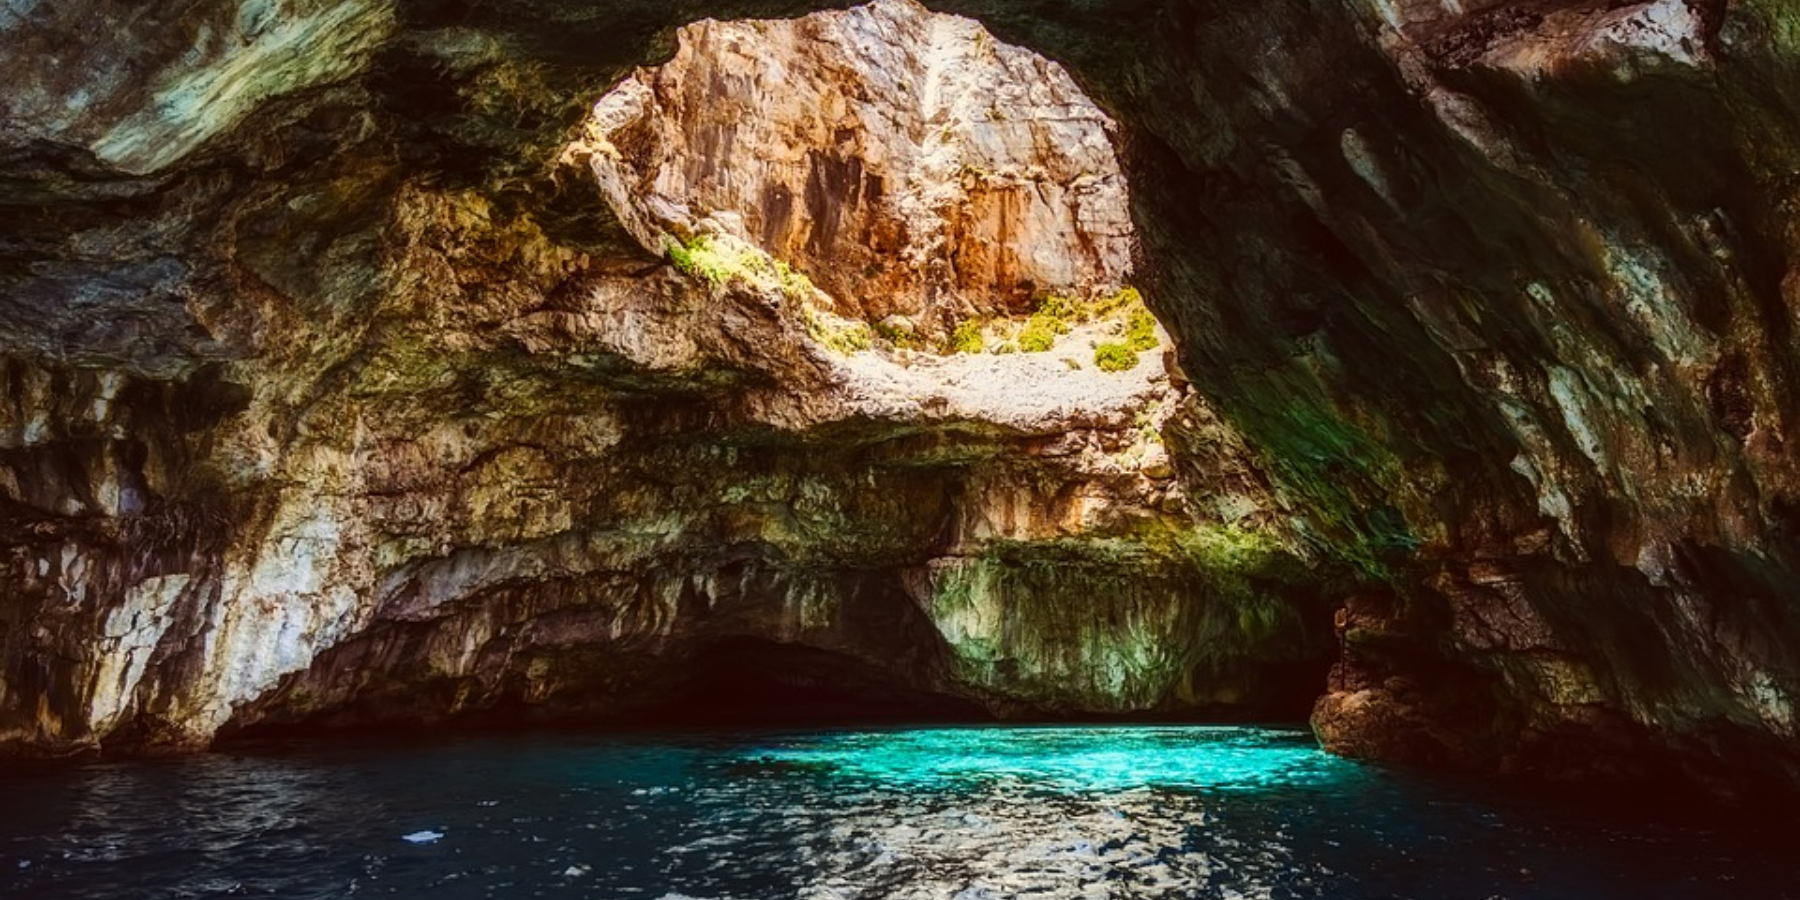 Foto di una grotta marina, la luce dall'alto illumina l'acqua e la colora di verde e azzurro